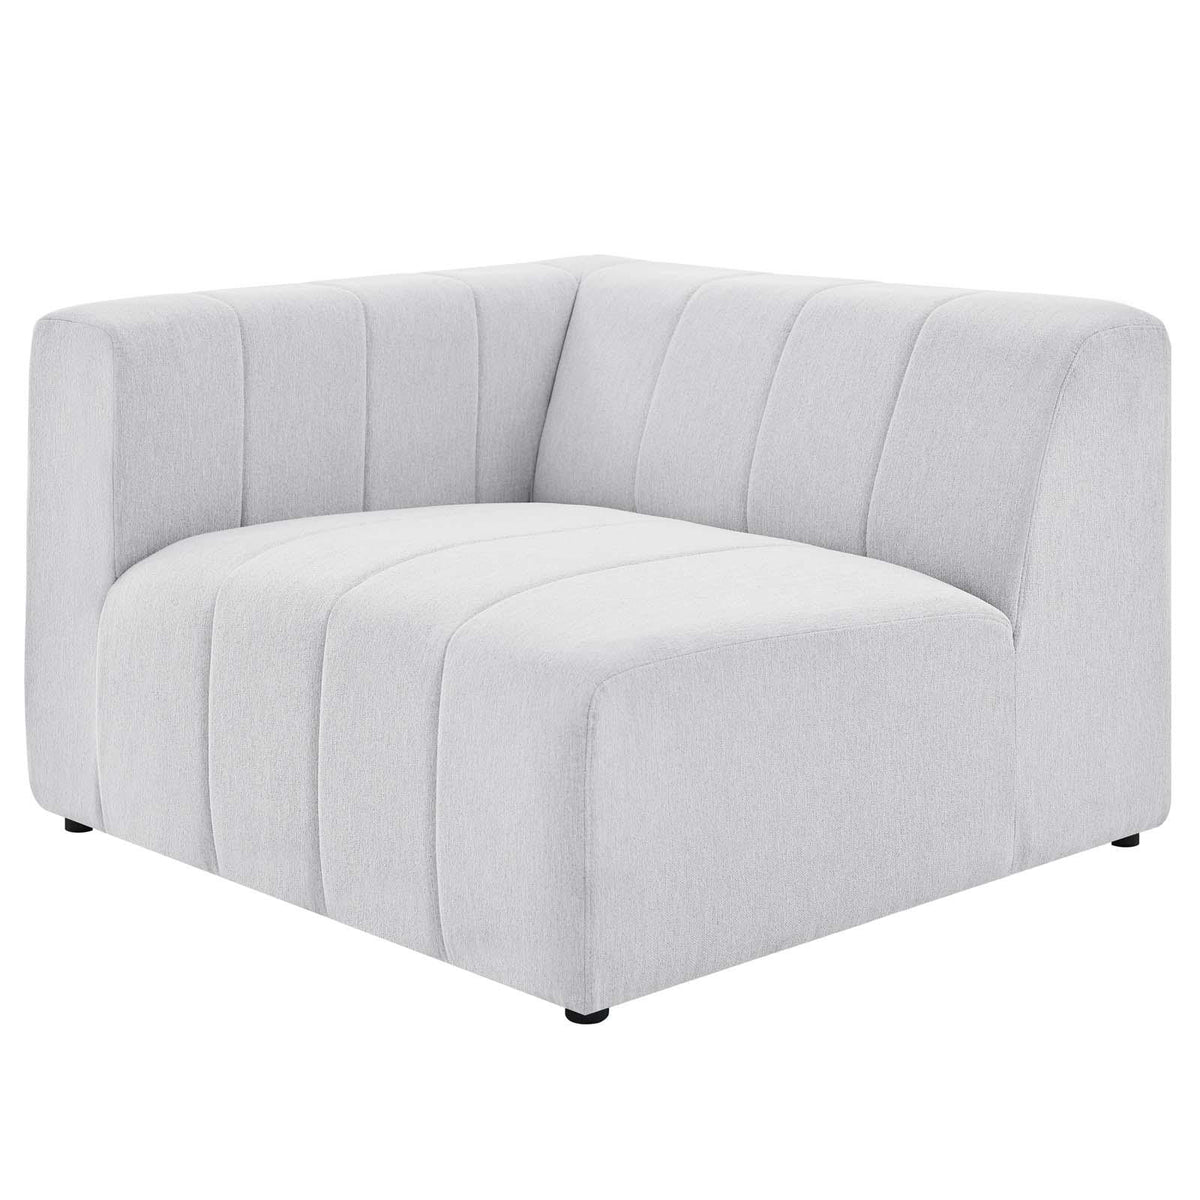 Modway Furniture Modern Bartlett Upholstered Fabric 8-Piece Sectional Sofa - EEI-4535